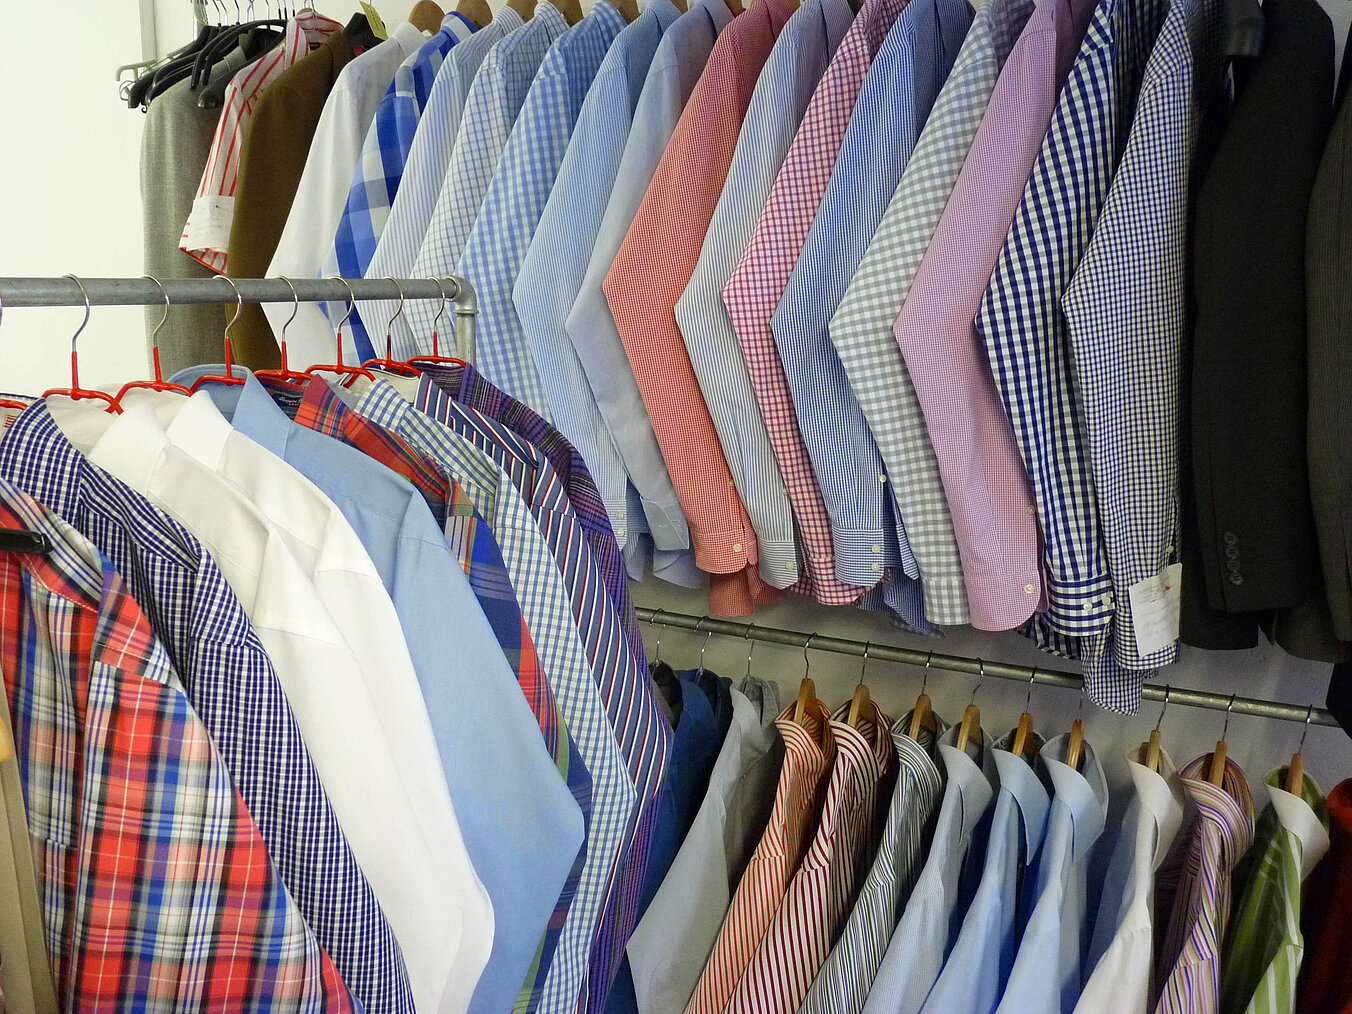 Reihe handgebügelter Hemden auf Kleiderbügeln